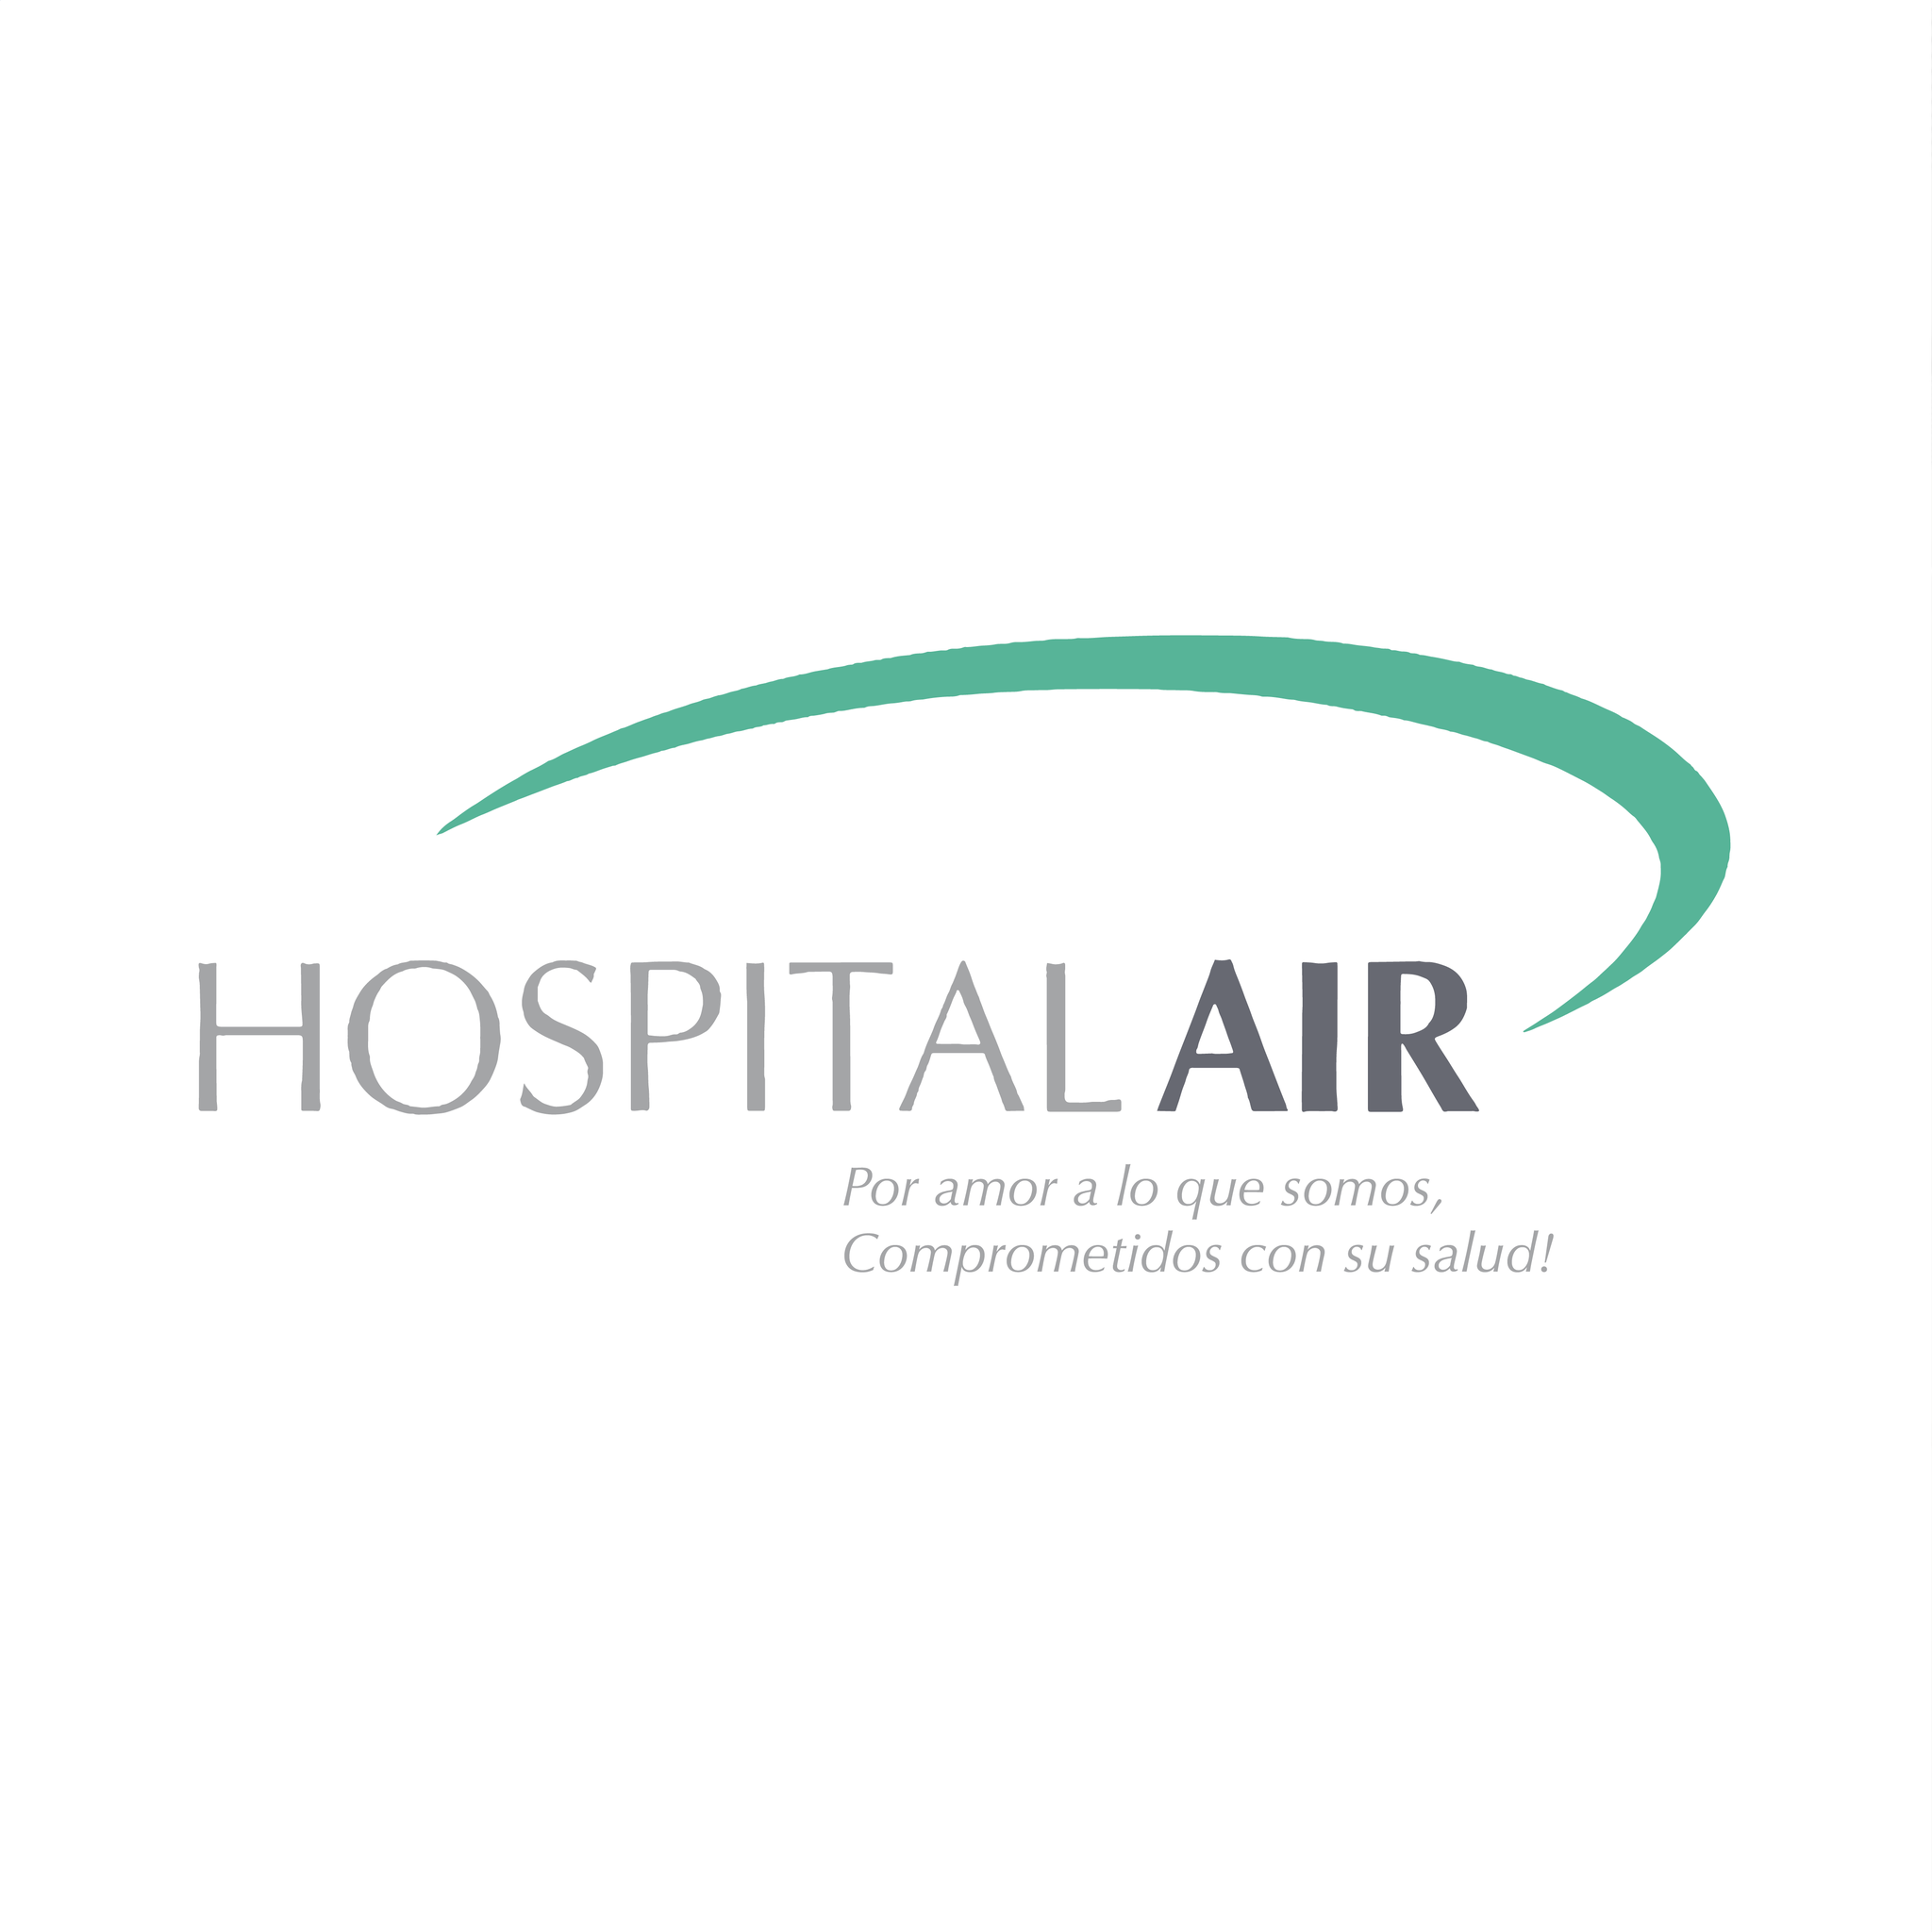 Hospital AIR